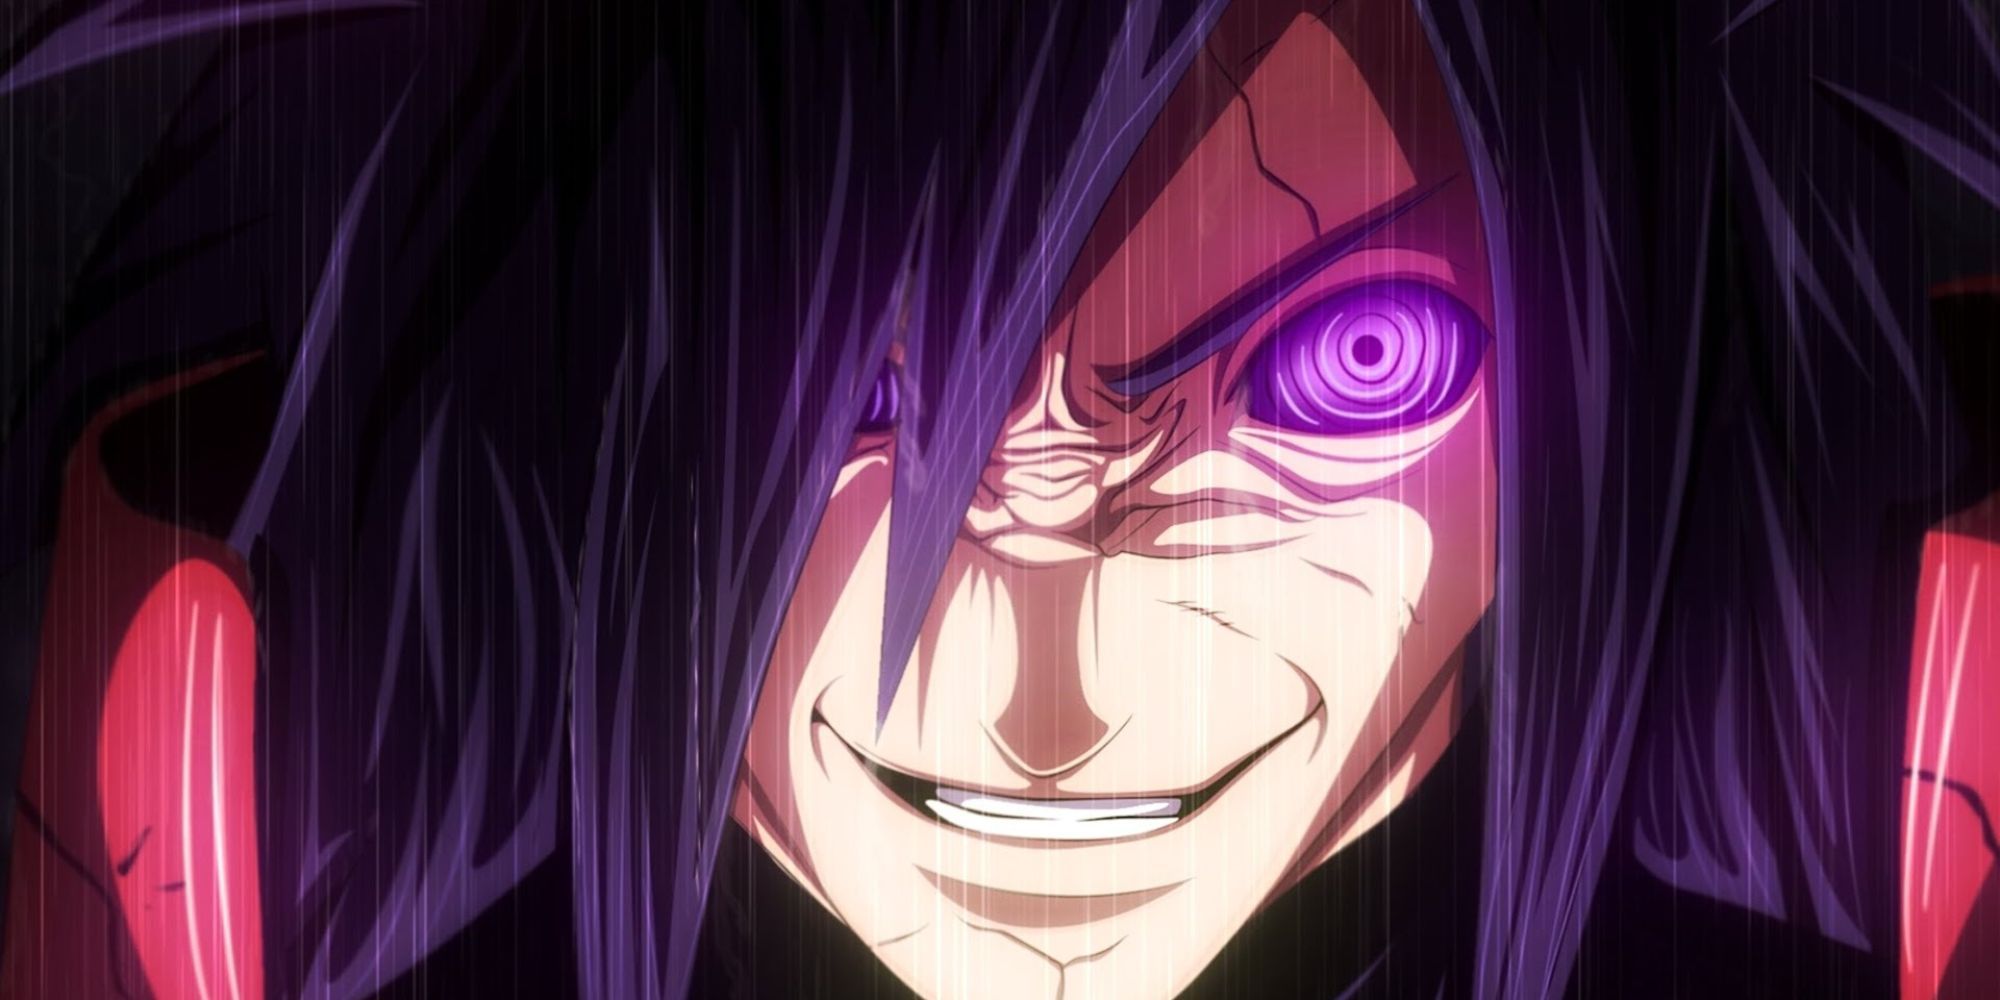 Naruto Madara Uchiha with a cruel smile